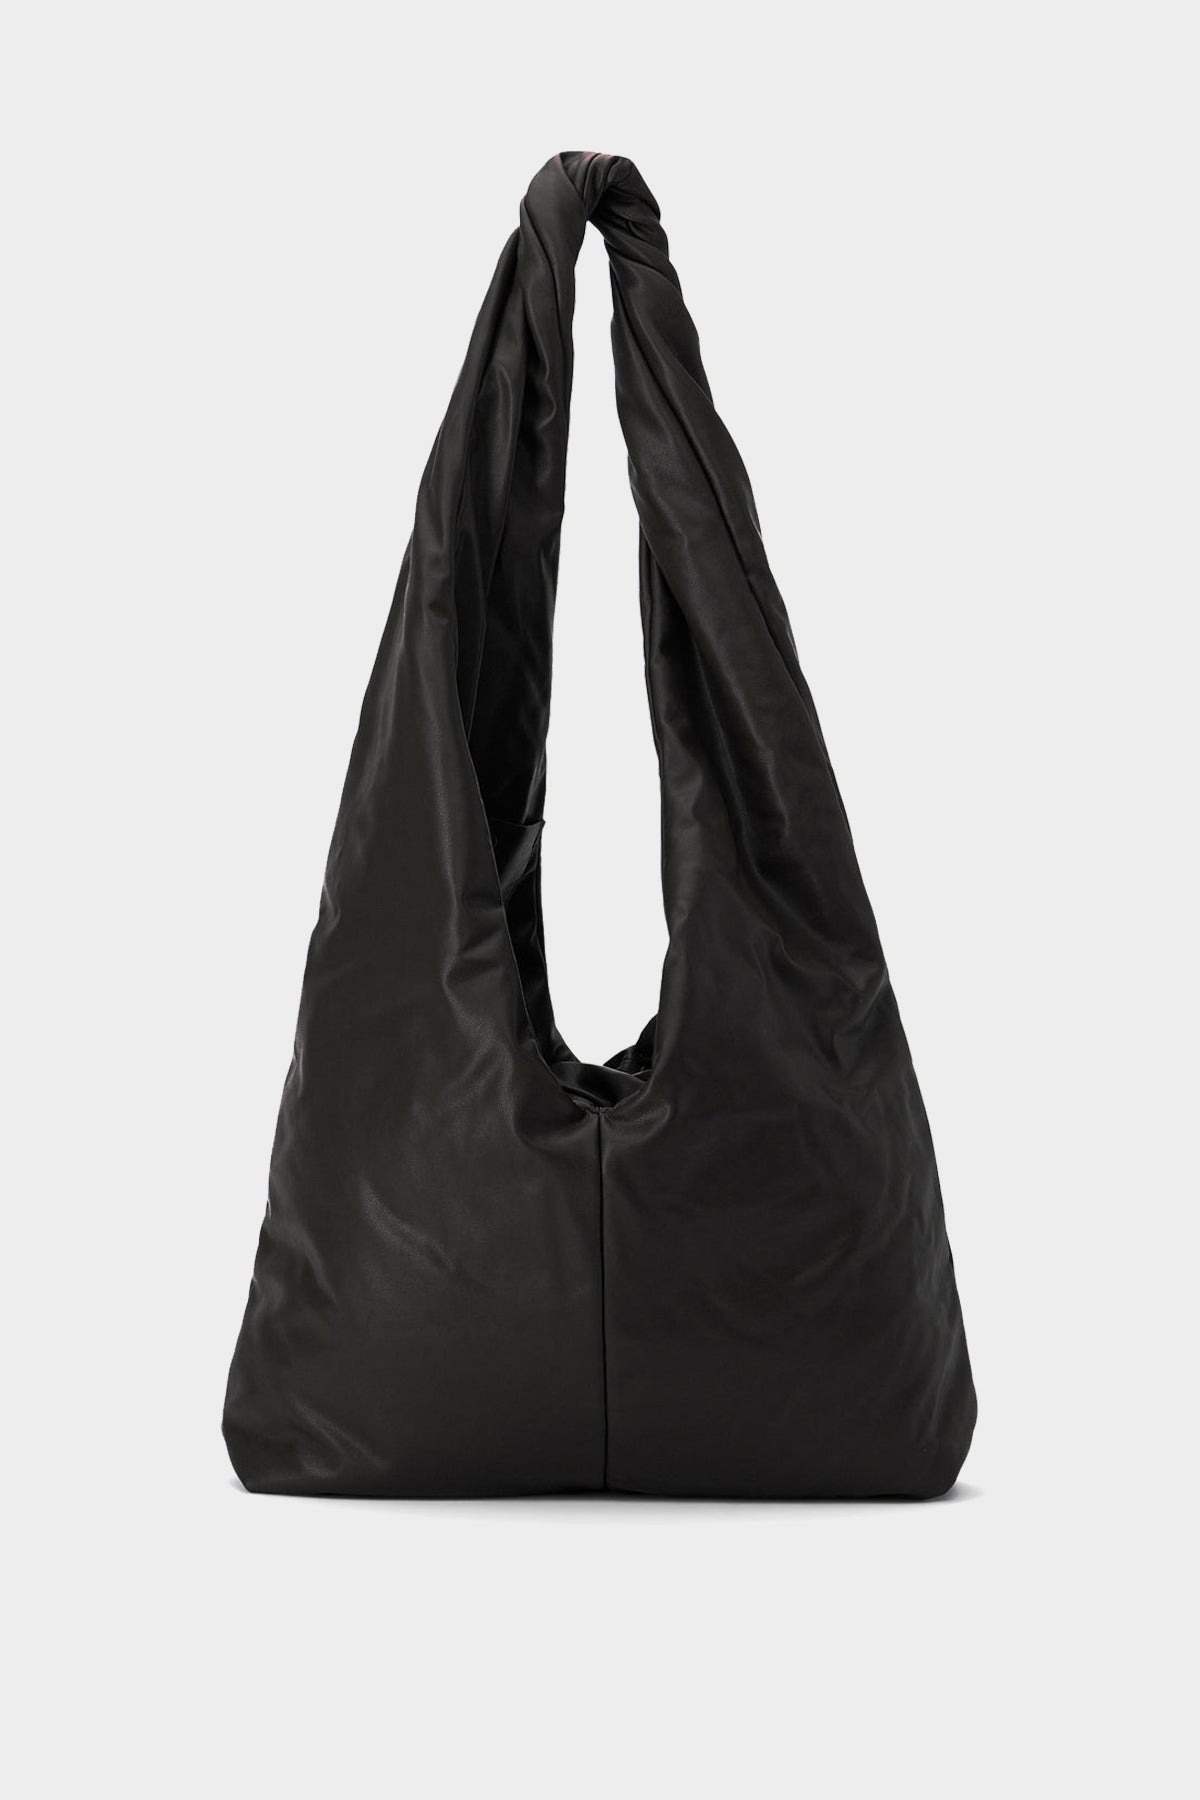 Shiloh Vegan Leather Shoulder Bag in Caviar - shop-olivia.com